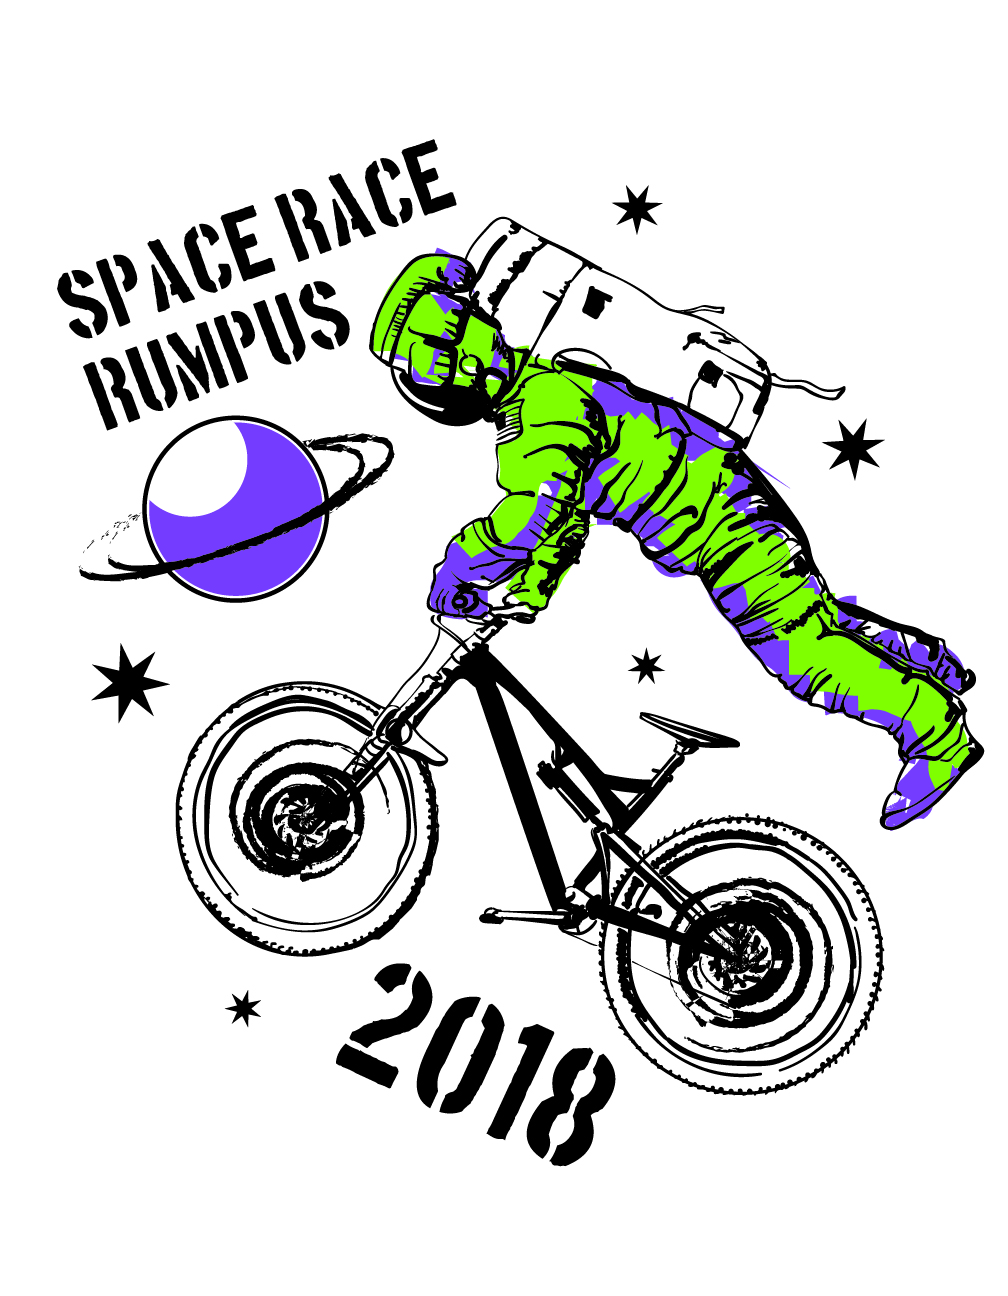 Space Race Rumpus